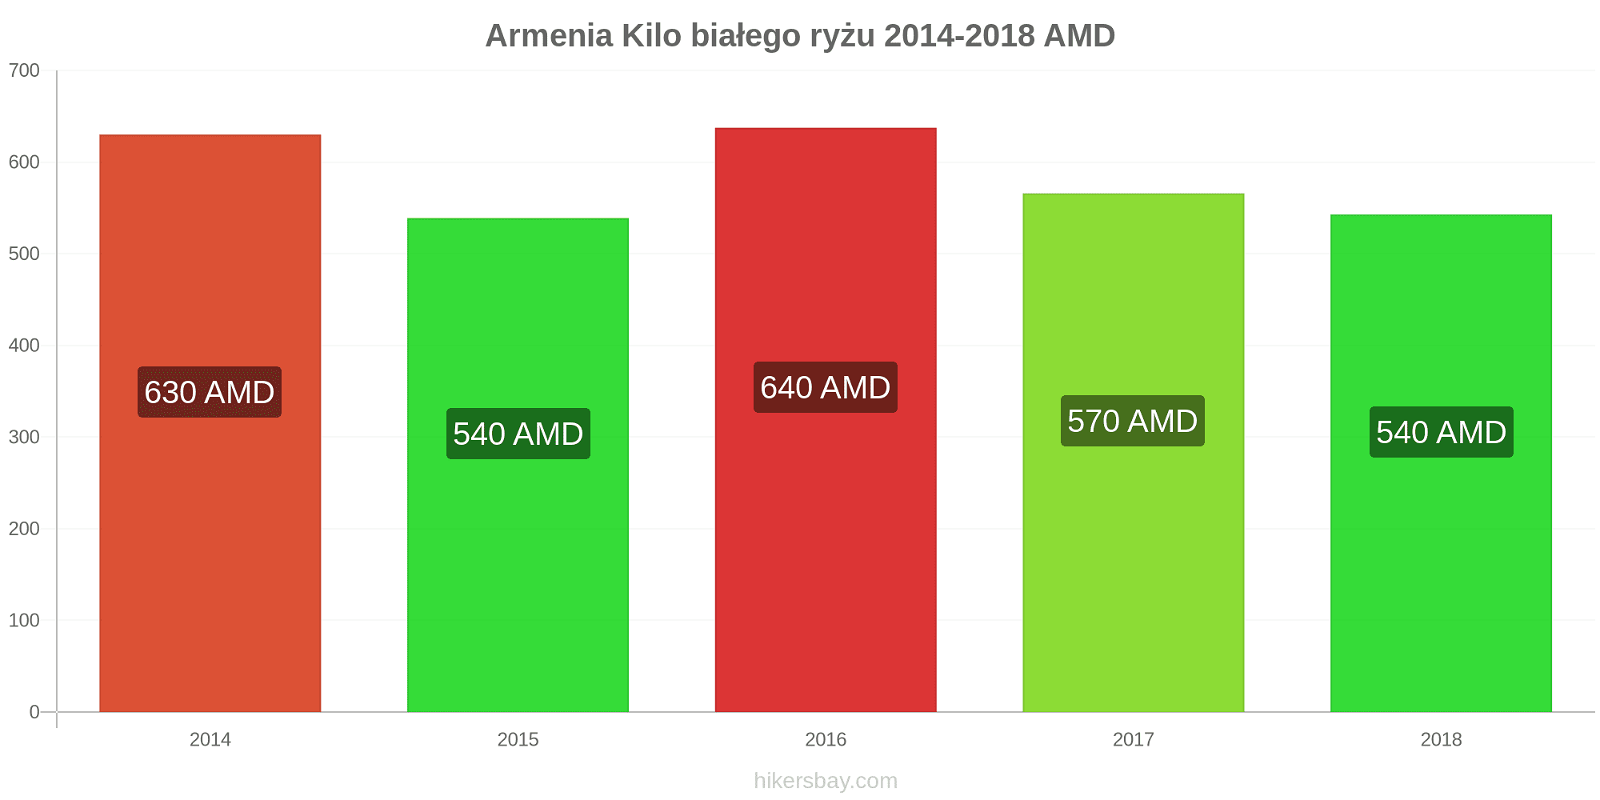 Armenia zmiany cen Kilo białego ryżu hikersbay.com